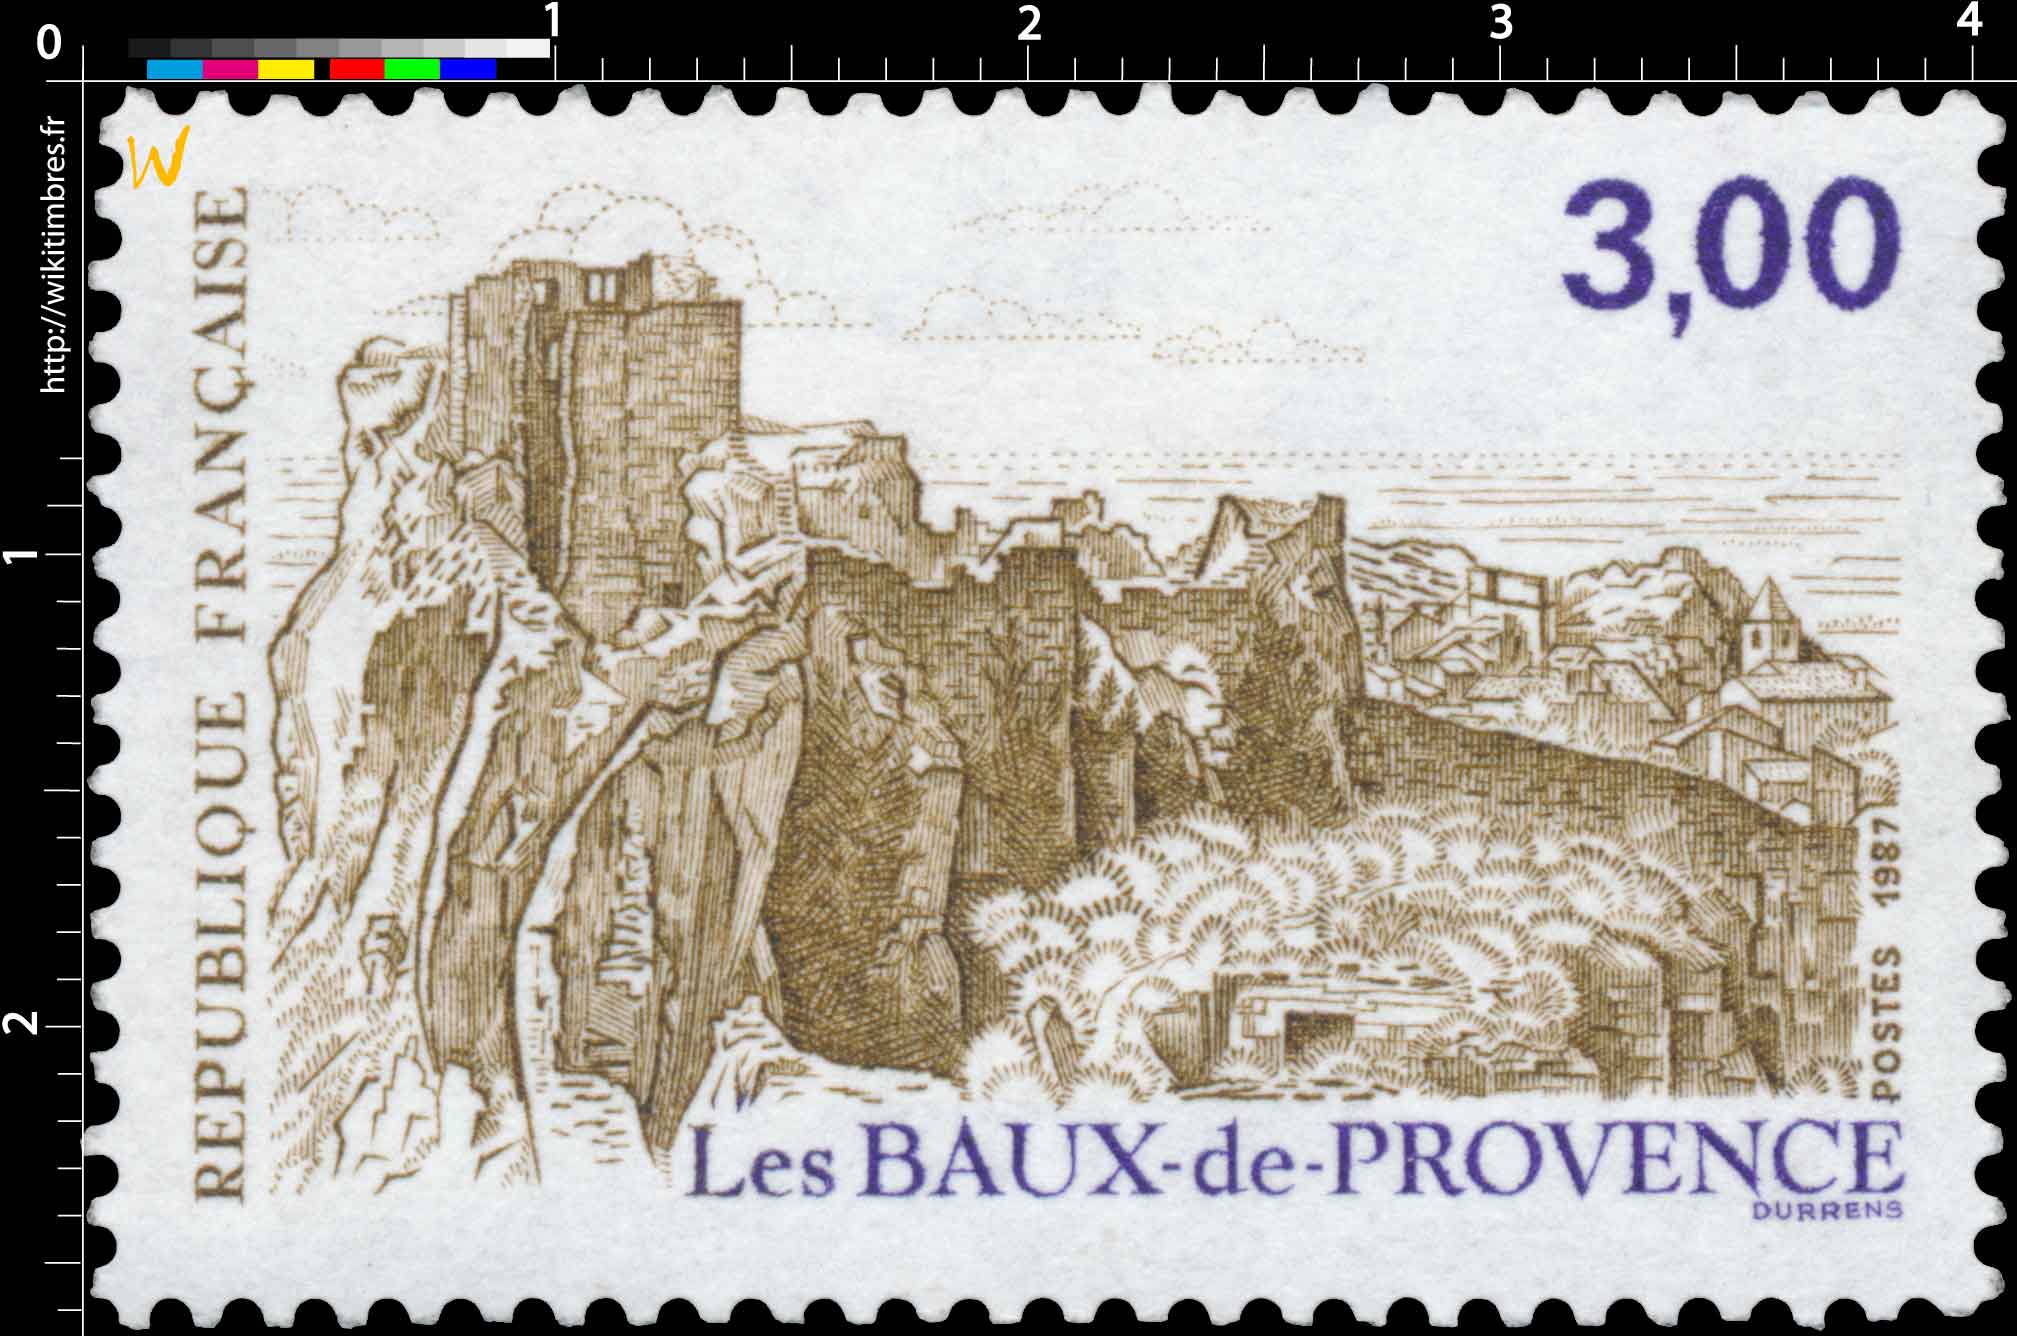 1987 Les BAUX-de-PROVENCE